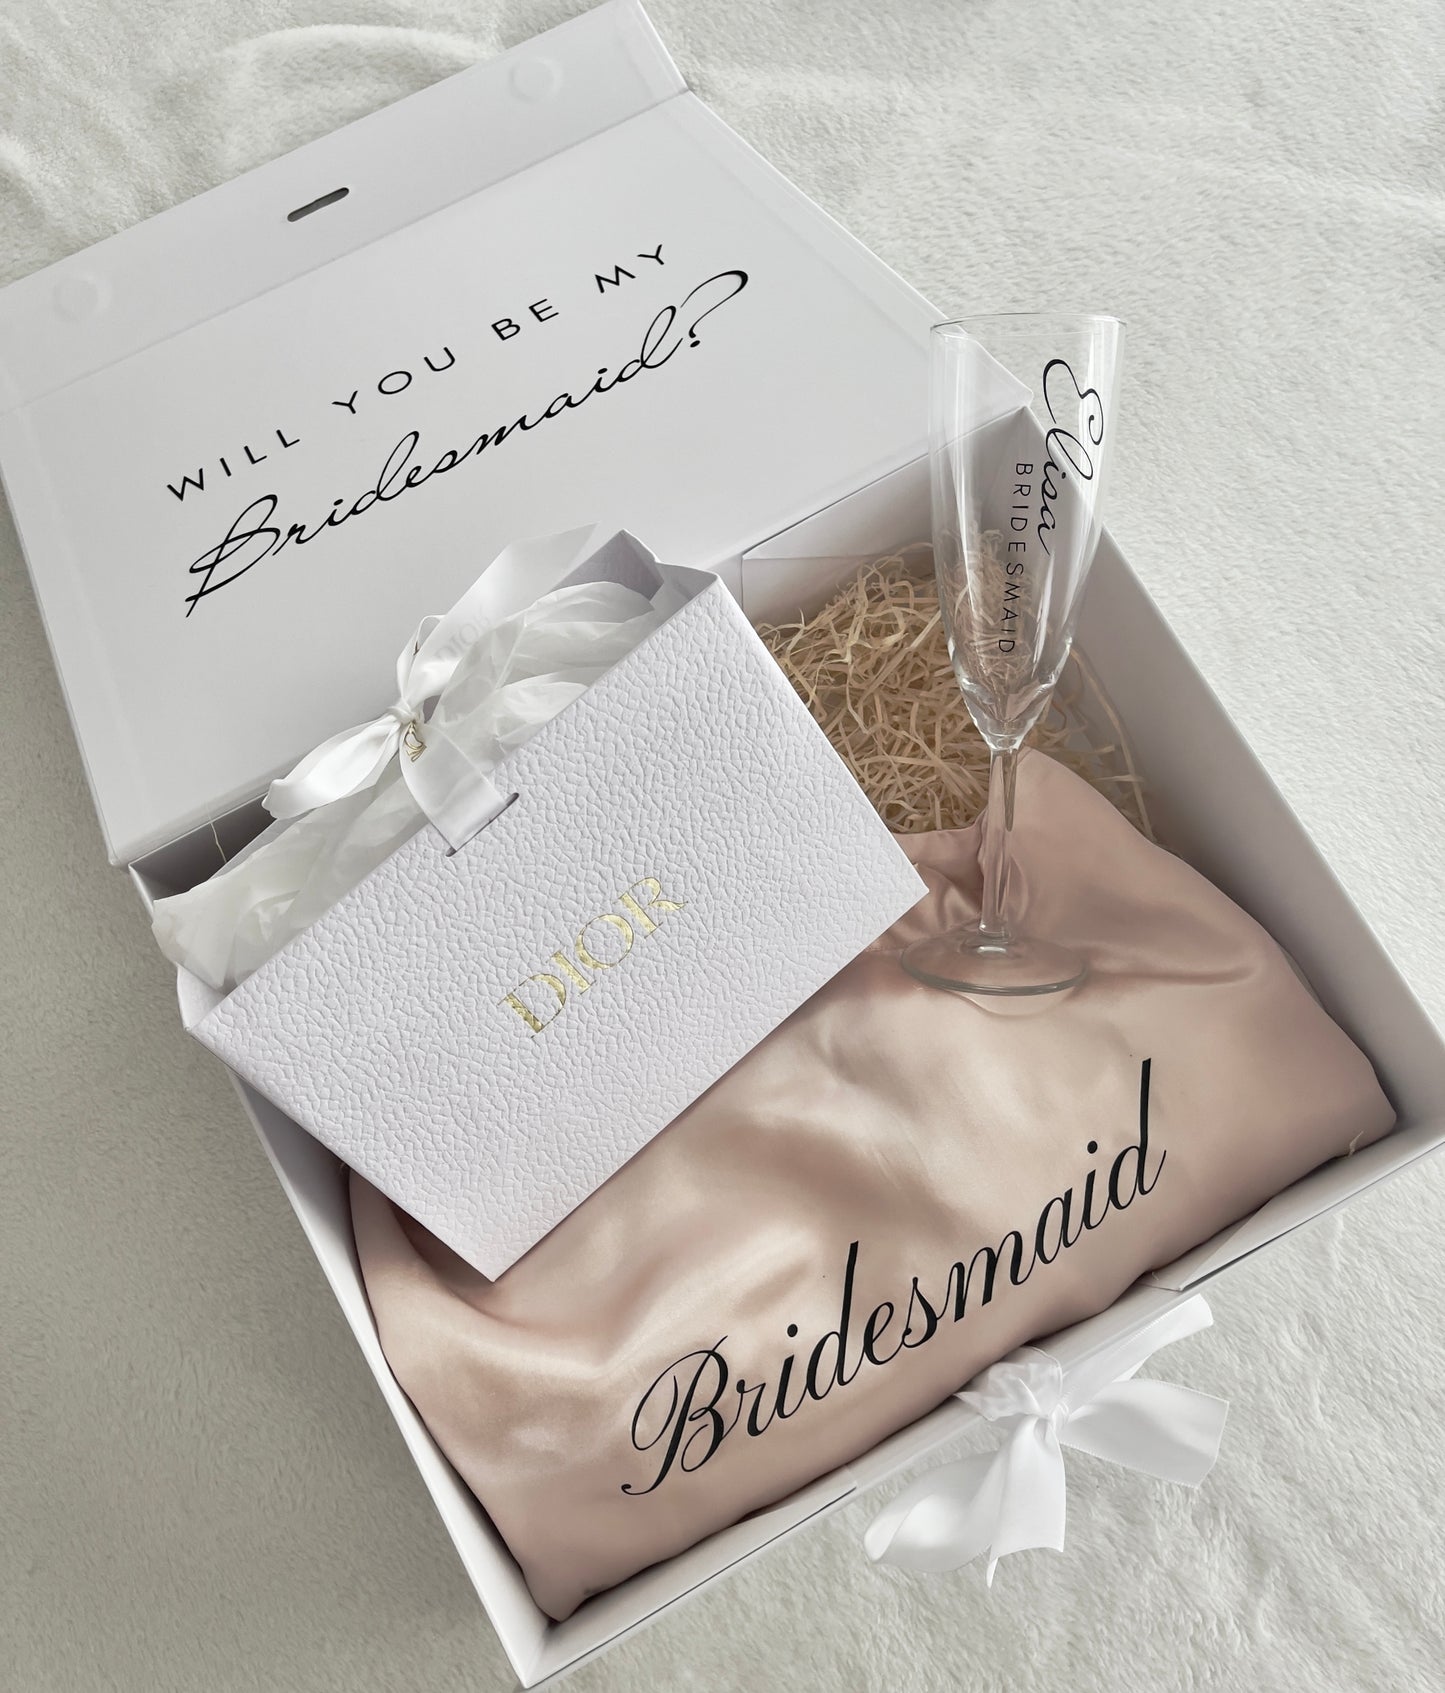 
                  
                    Bridesmaid Box Schlafanzug
                  
                